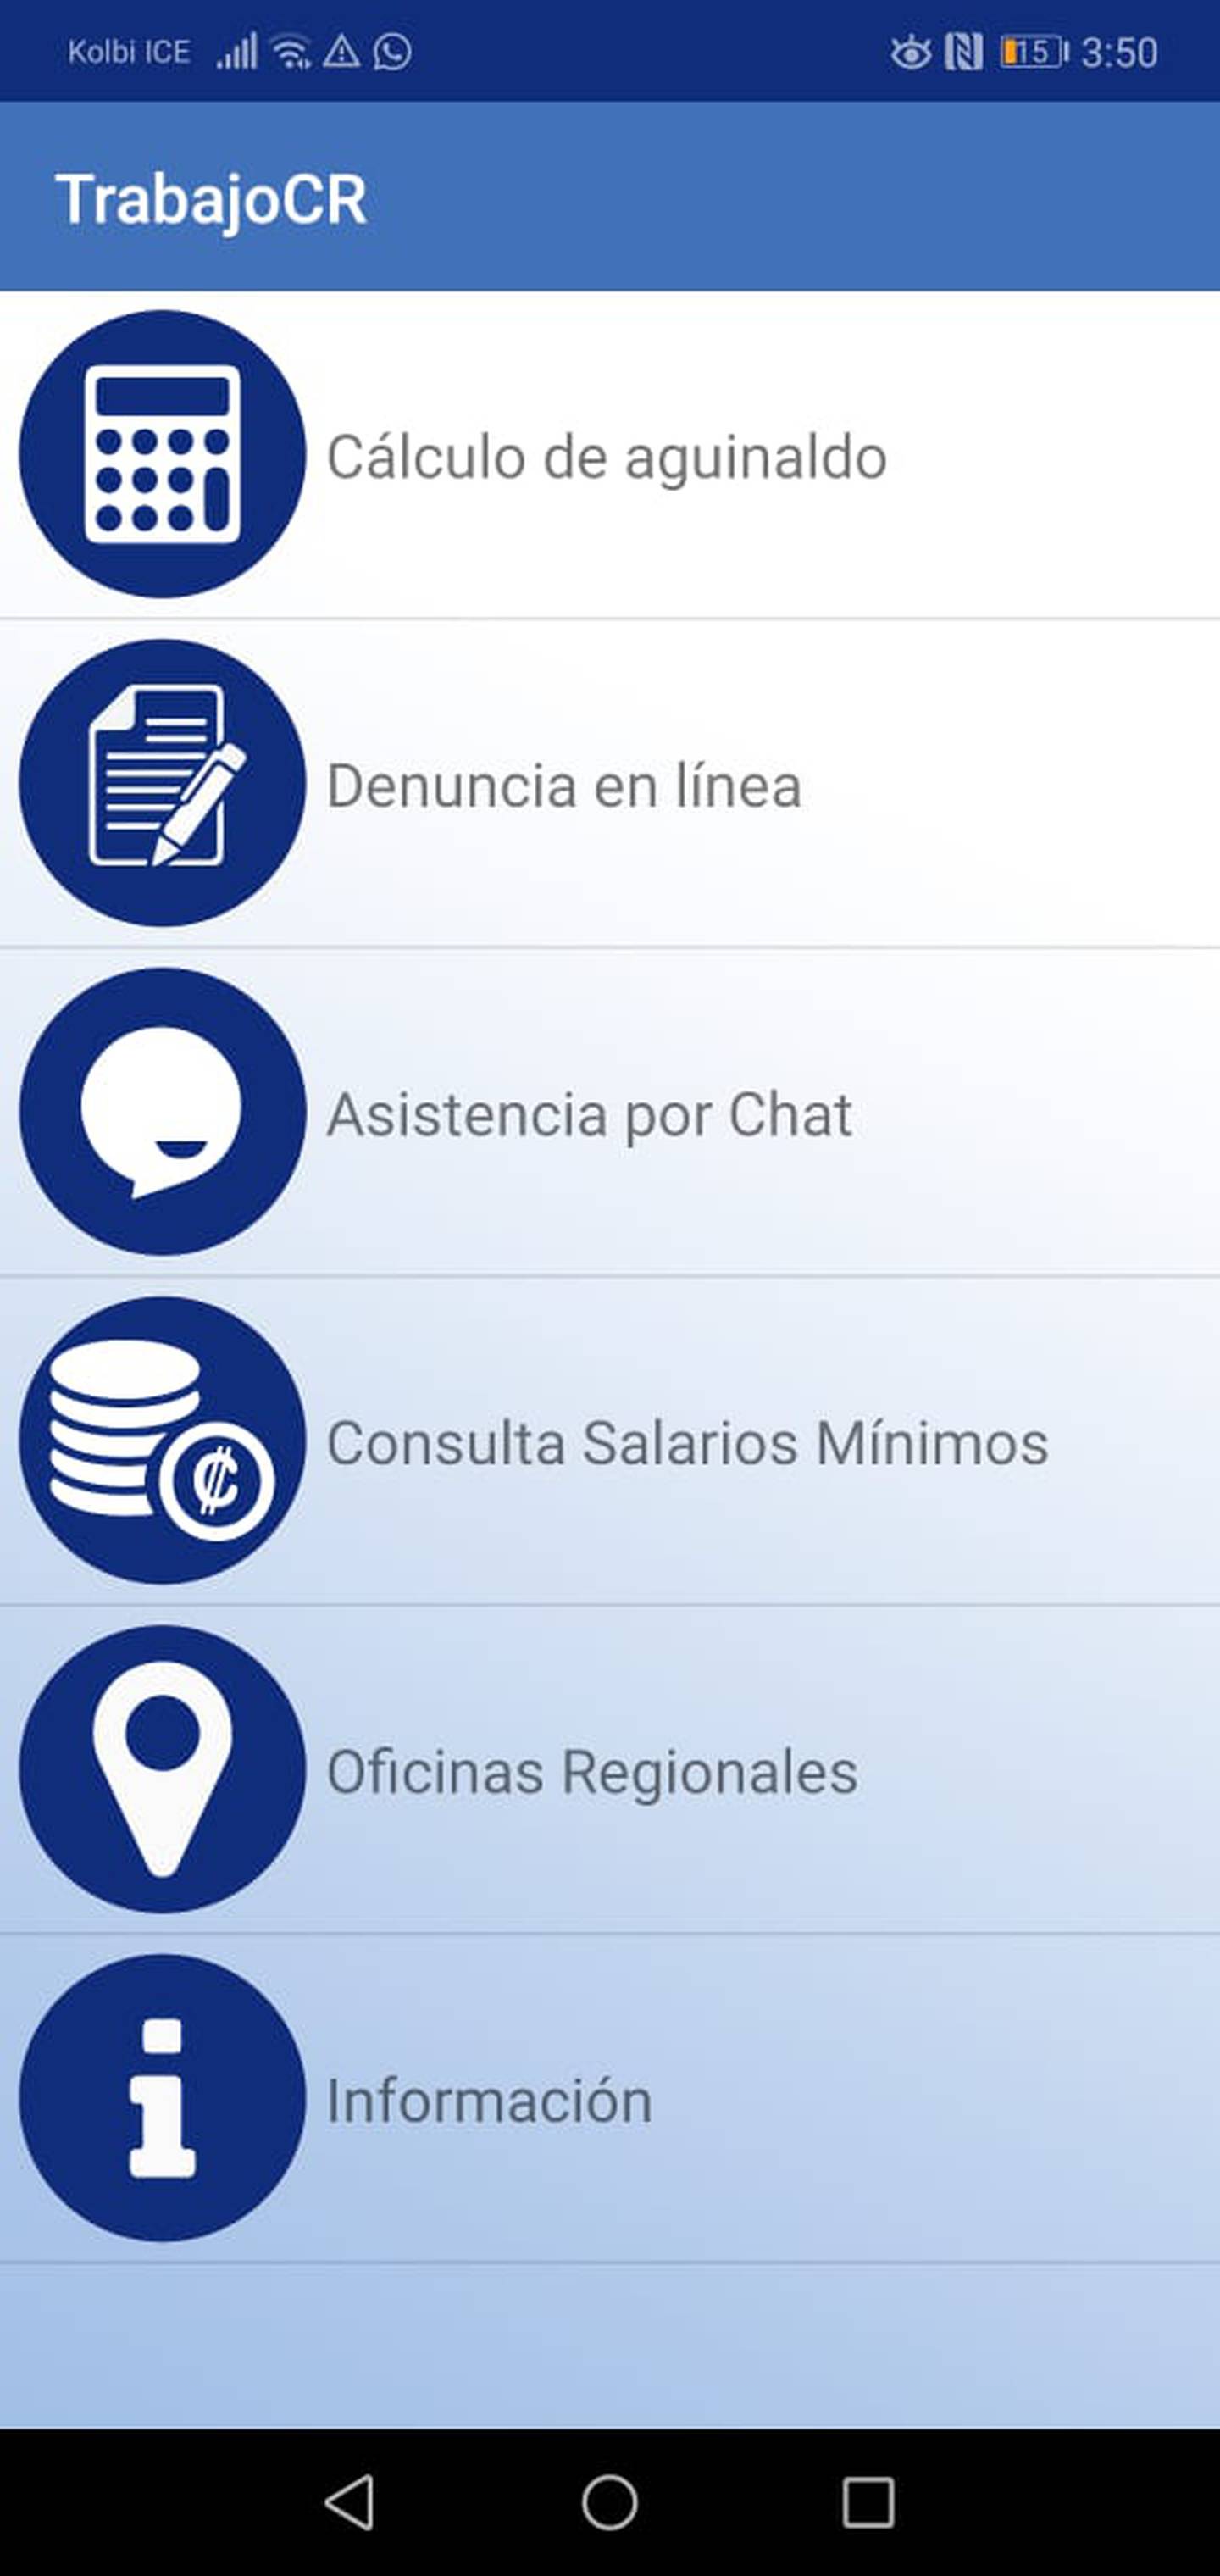 TrabajoCR es la aplicación para celulares del ministerio de Trabajo para que usted se informe sobre sus derechos en materia laboral.